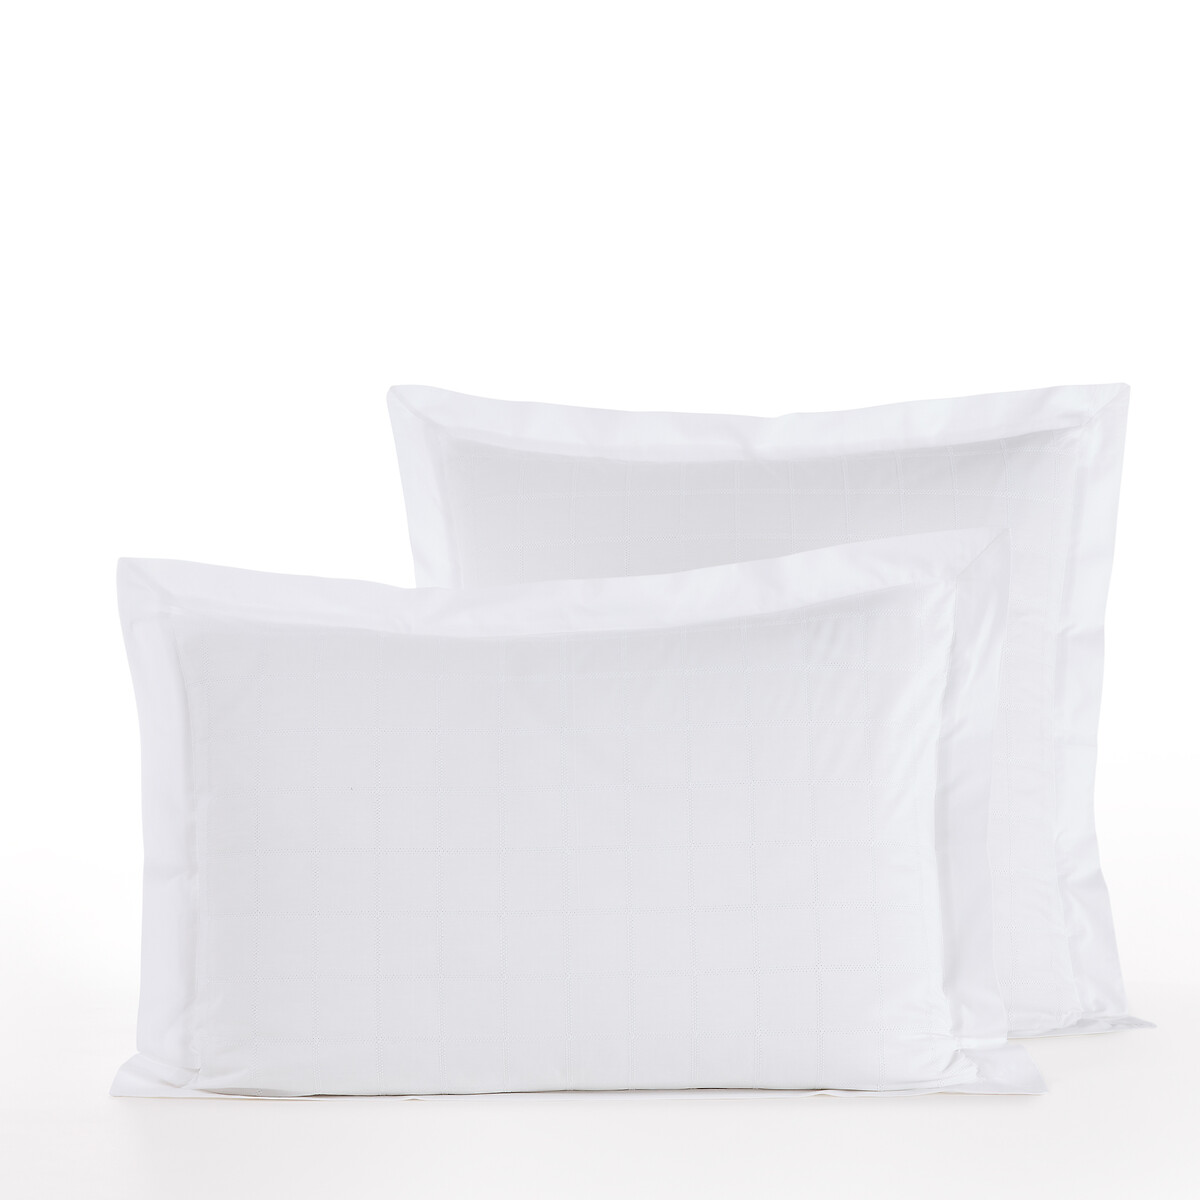 Loeva Embroidered 100% Cotton Percale Pillowcase